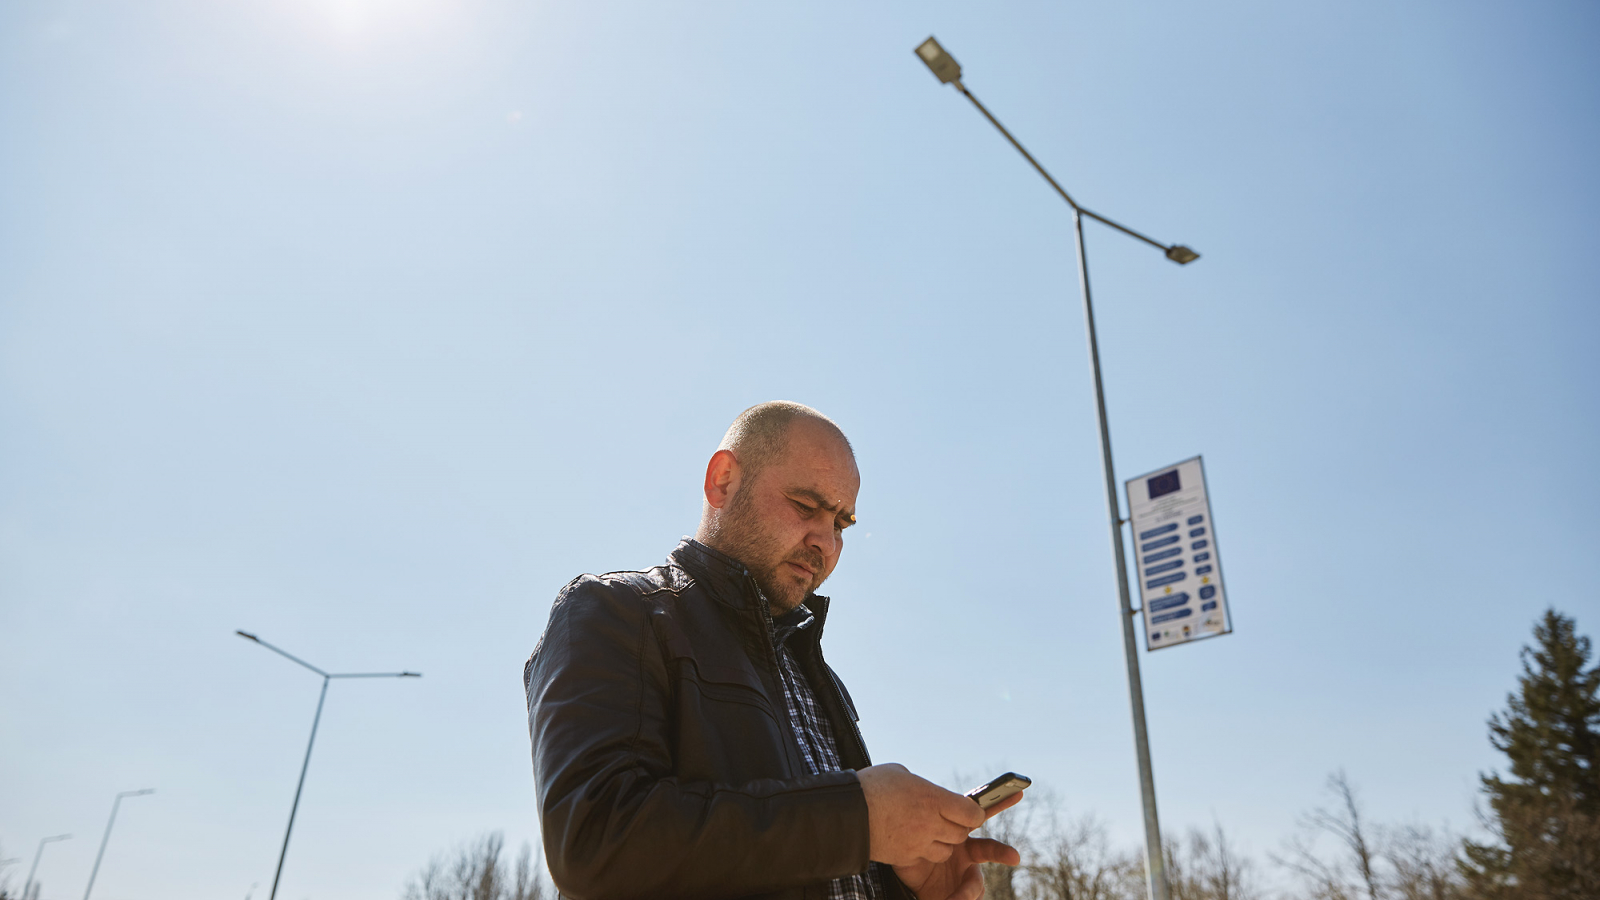 Moldova: EU project to equip Călărași with new energy-efficient street lights 